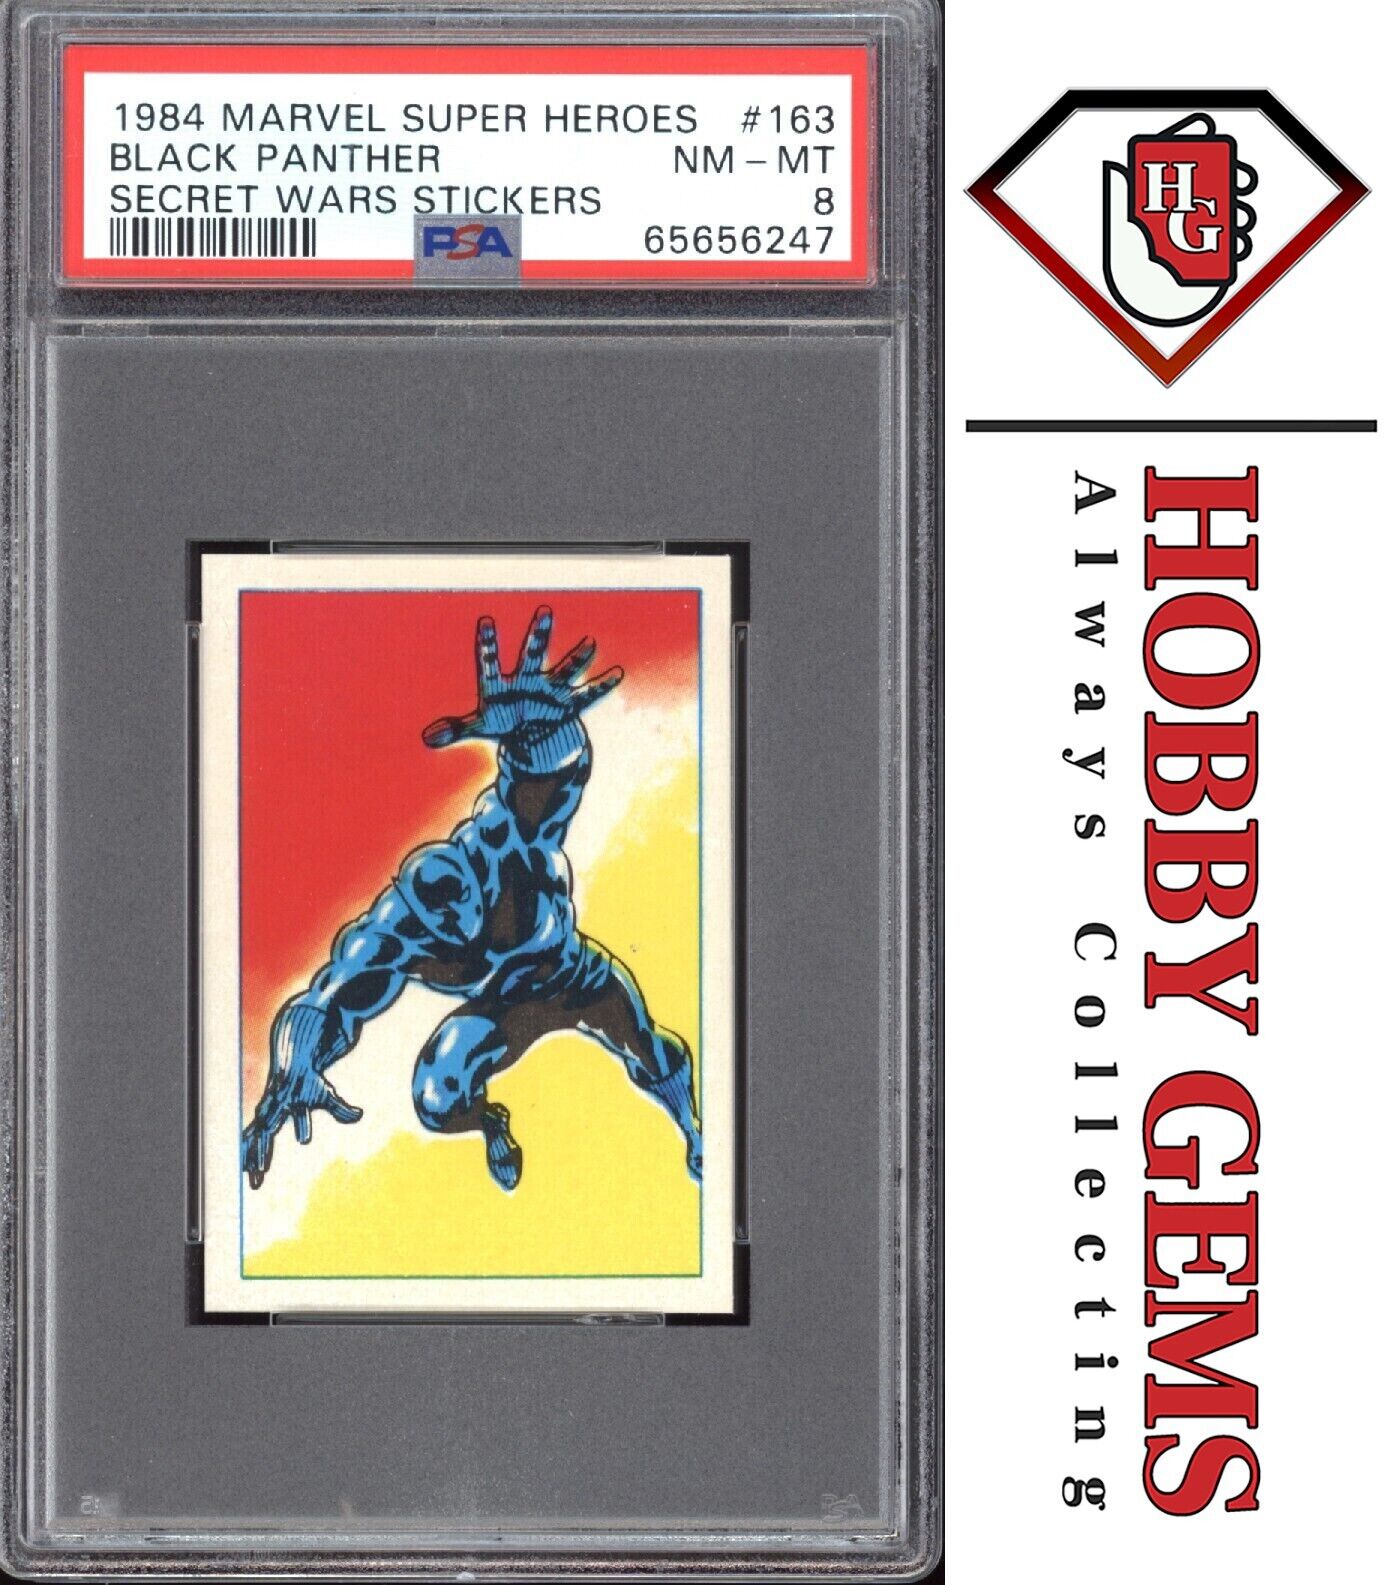 BLACK PANTHER PSA 8 1984 Marvel Super Heroes Secret Wars Stickers #163 C3